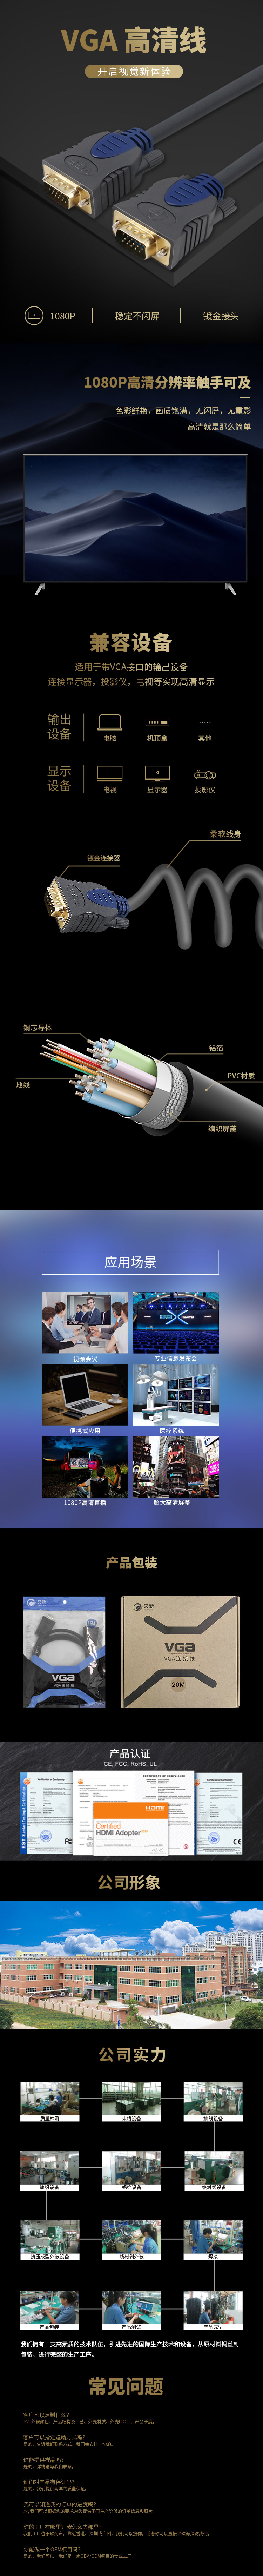 VGA中文.jpg